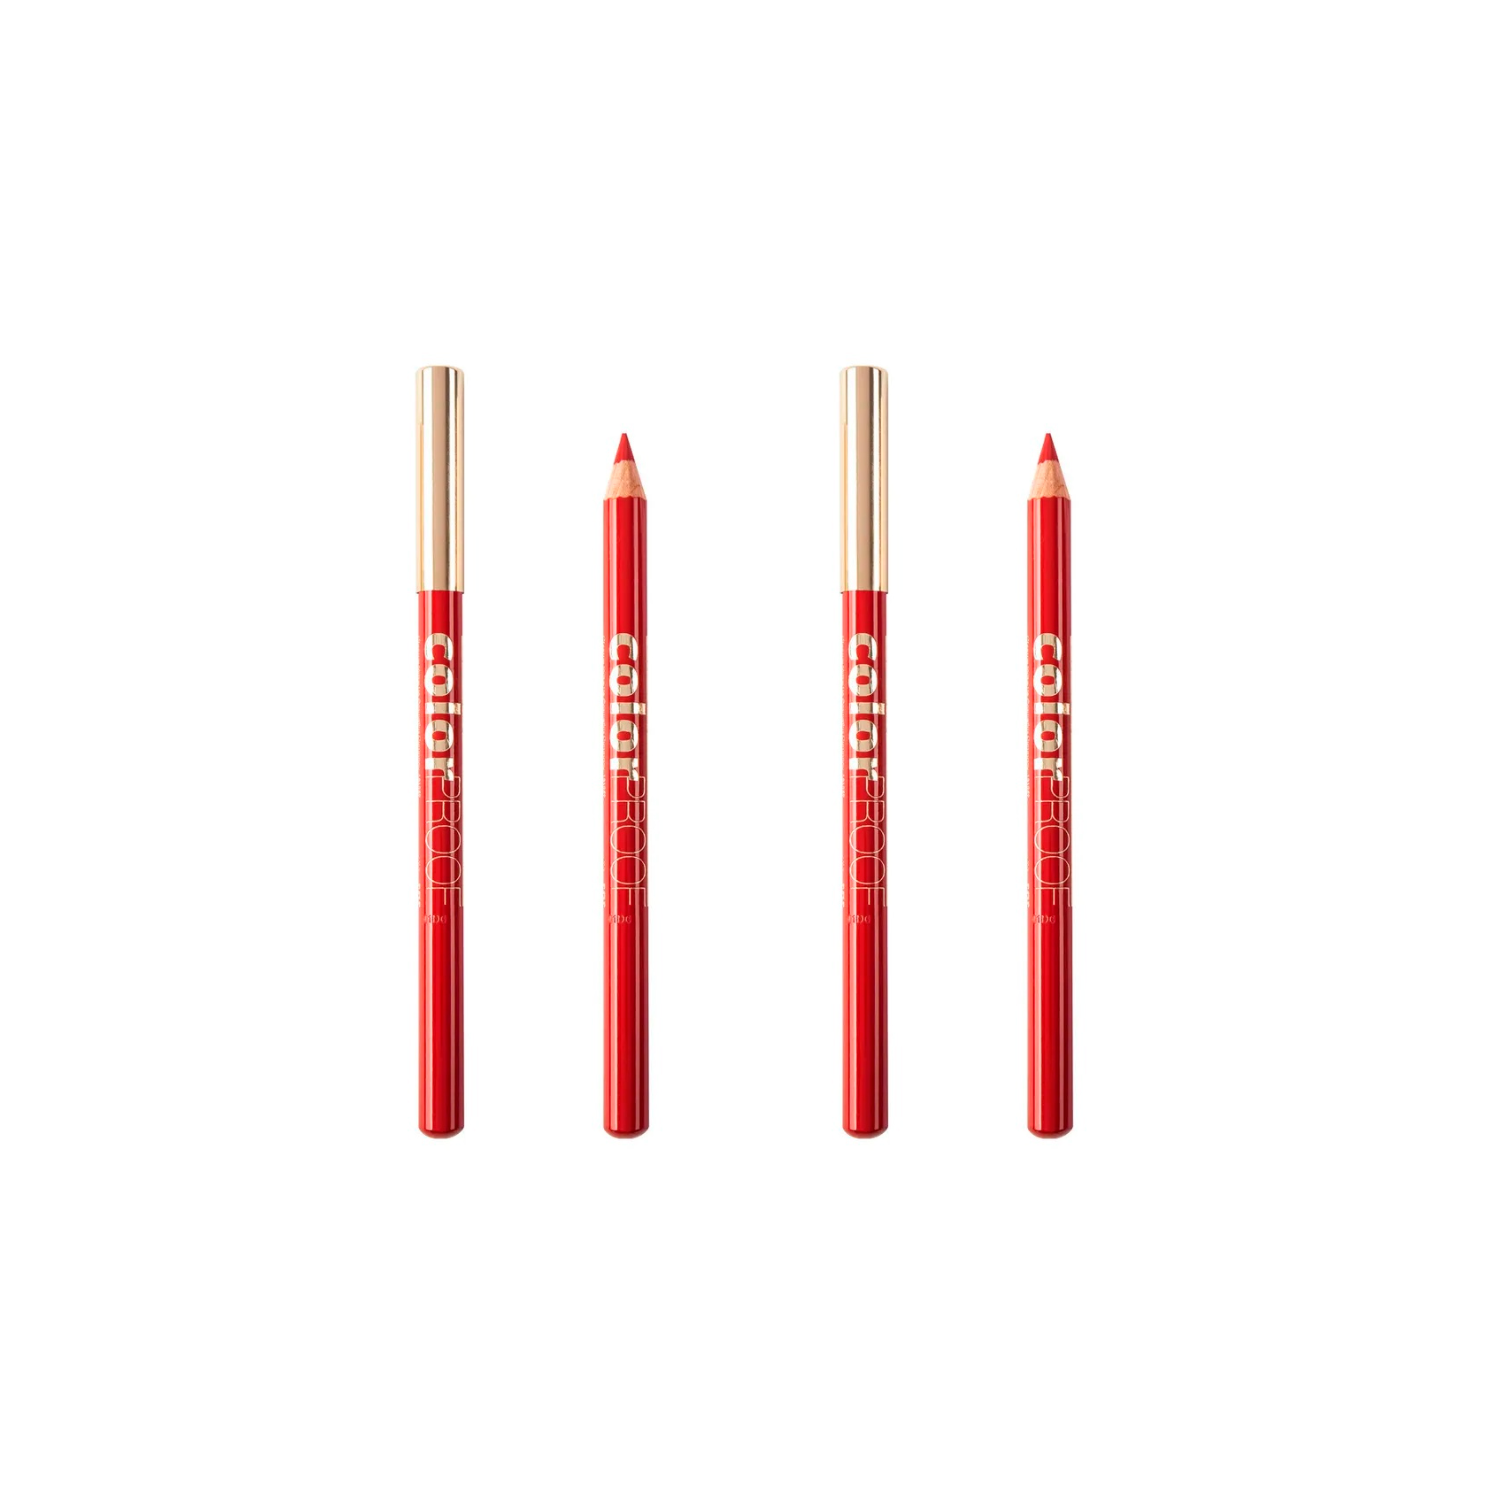 Карандаш для губ Charme серии Colour Proof, Классический красный, 2 шт. карандаш для век charme 201 угольный3 шт